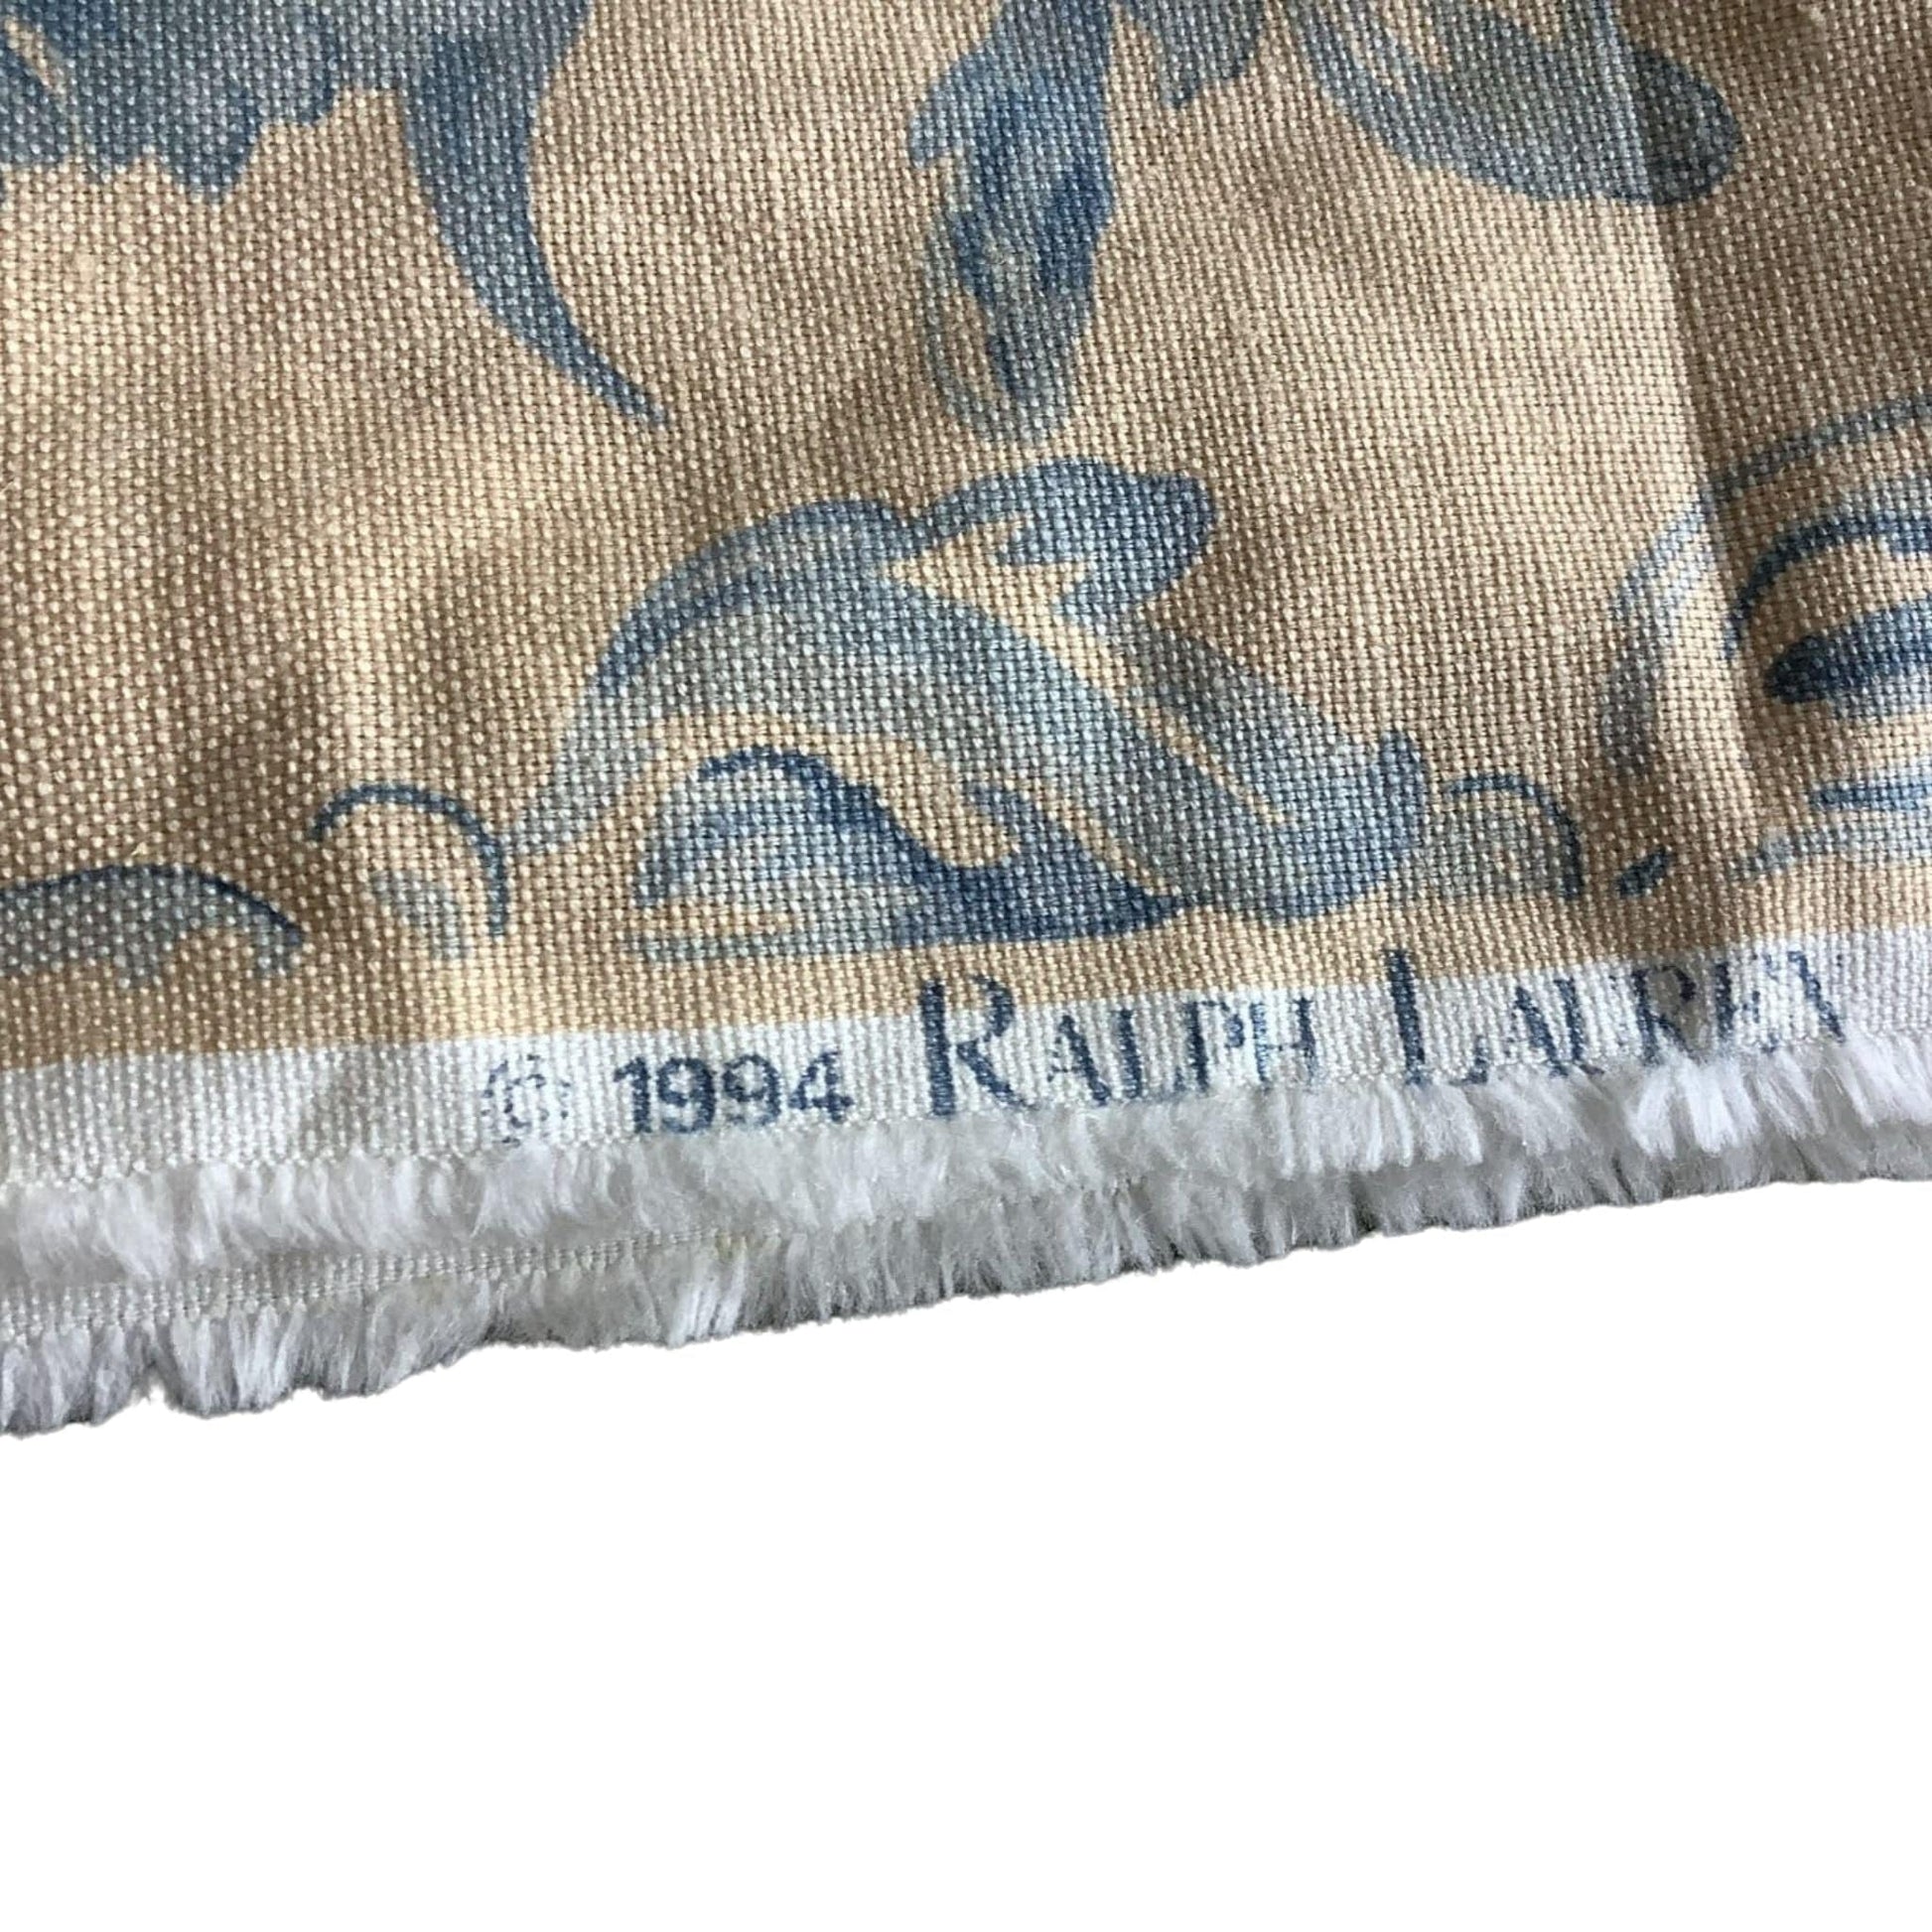 Vintage Ralph Lauren Fabric Multi / Cotton / Vintage 1980s